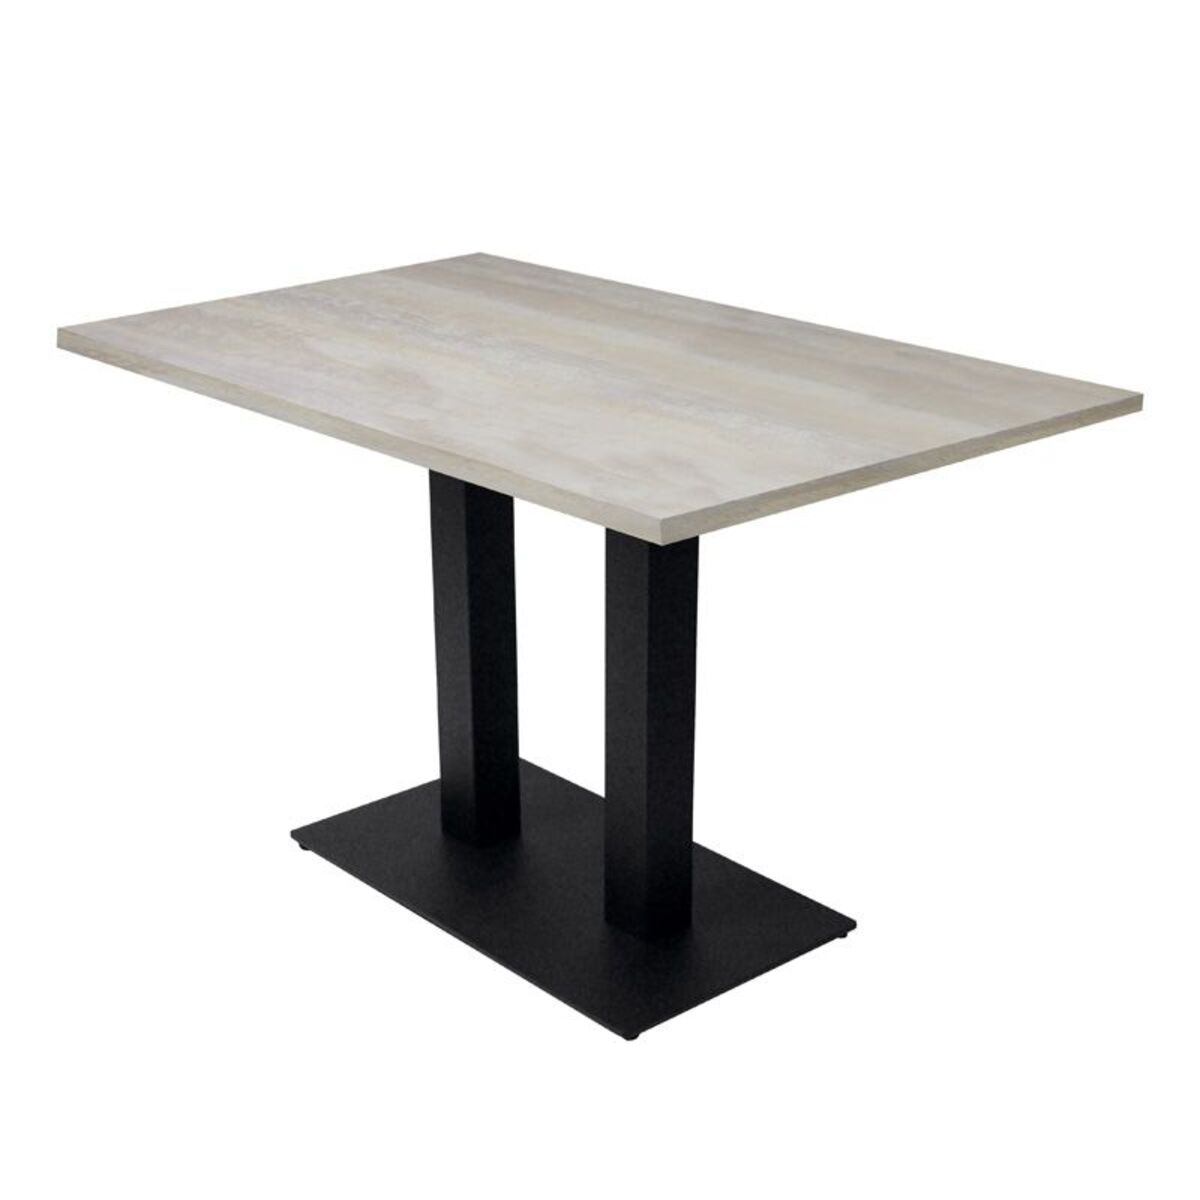 Table intérieure pied double noir & plateau tavola blanc 110 x70 cm